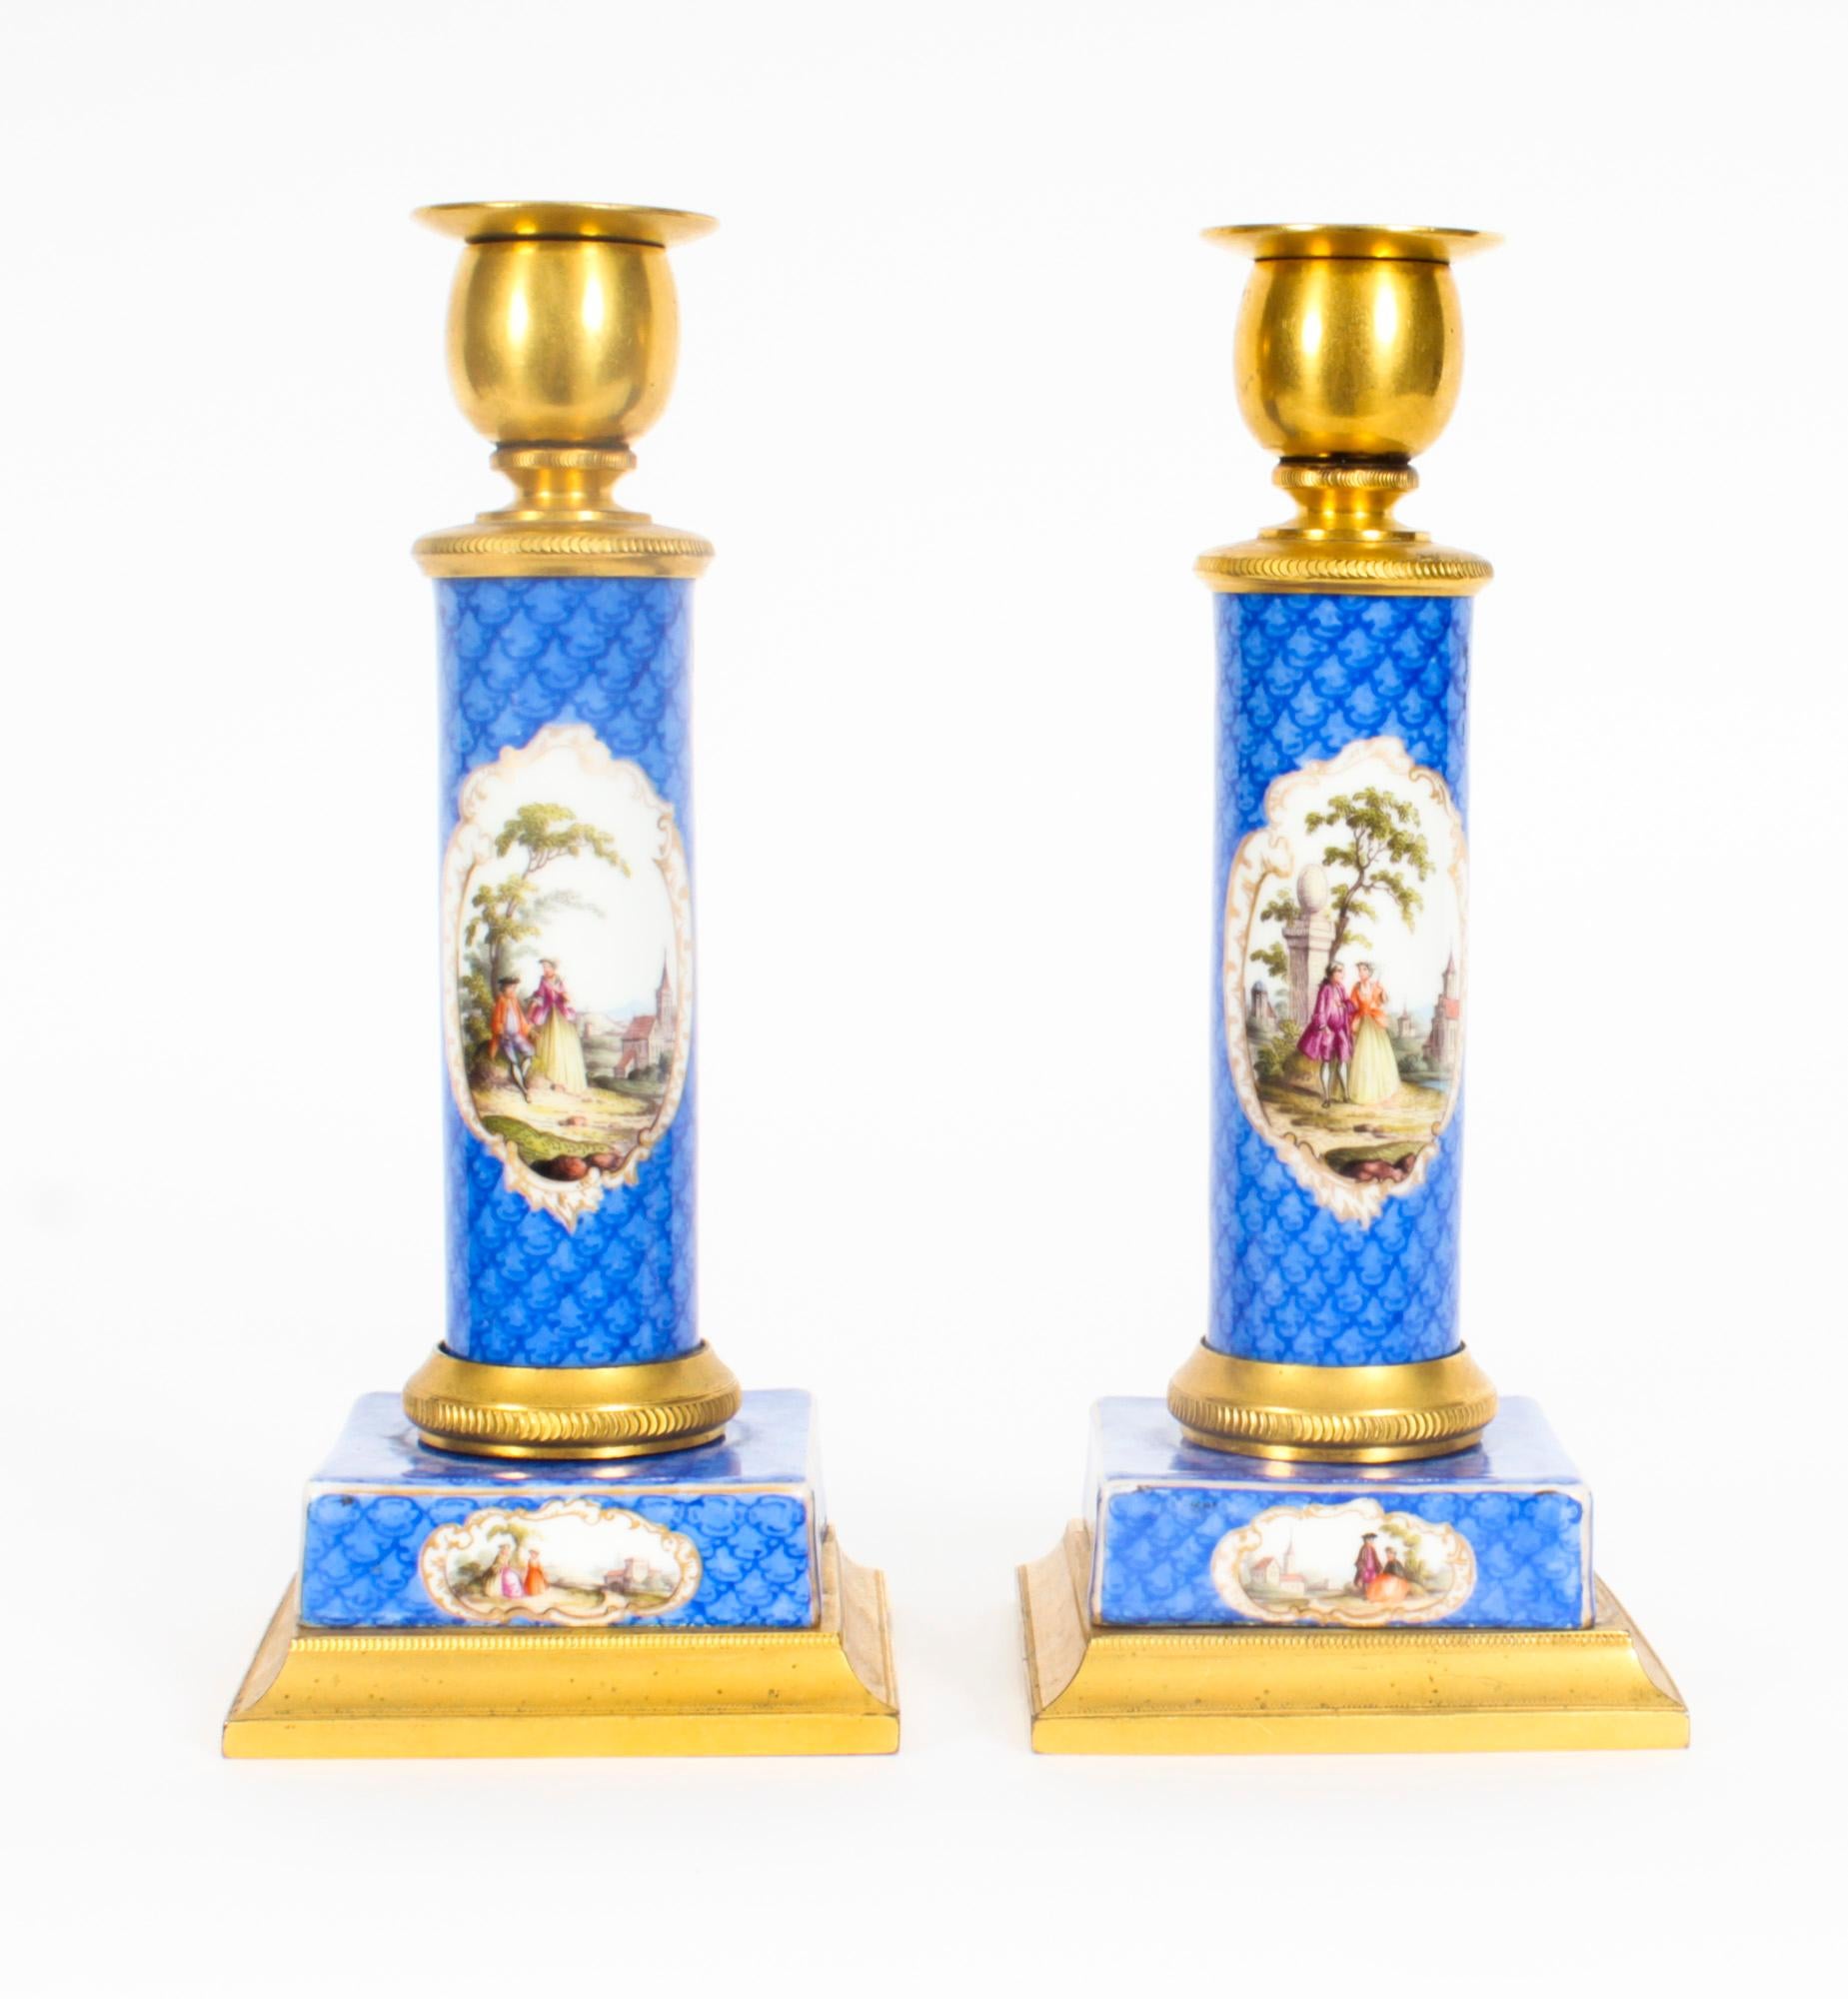 Il s'agit d'une charmante paire de chandeliers anciens en porcelaine de Sèvres du 19ème siècle, montés en bronze doré, datant de 1870.
 
Les bases carrées et les tiges de colonnes unies avec des appliques tulipes décorées de panneaux de paysages